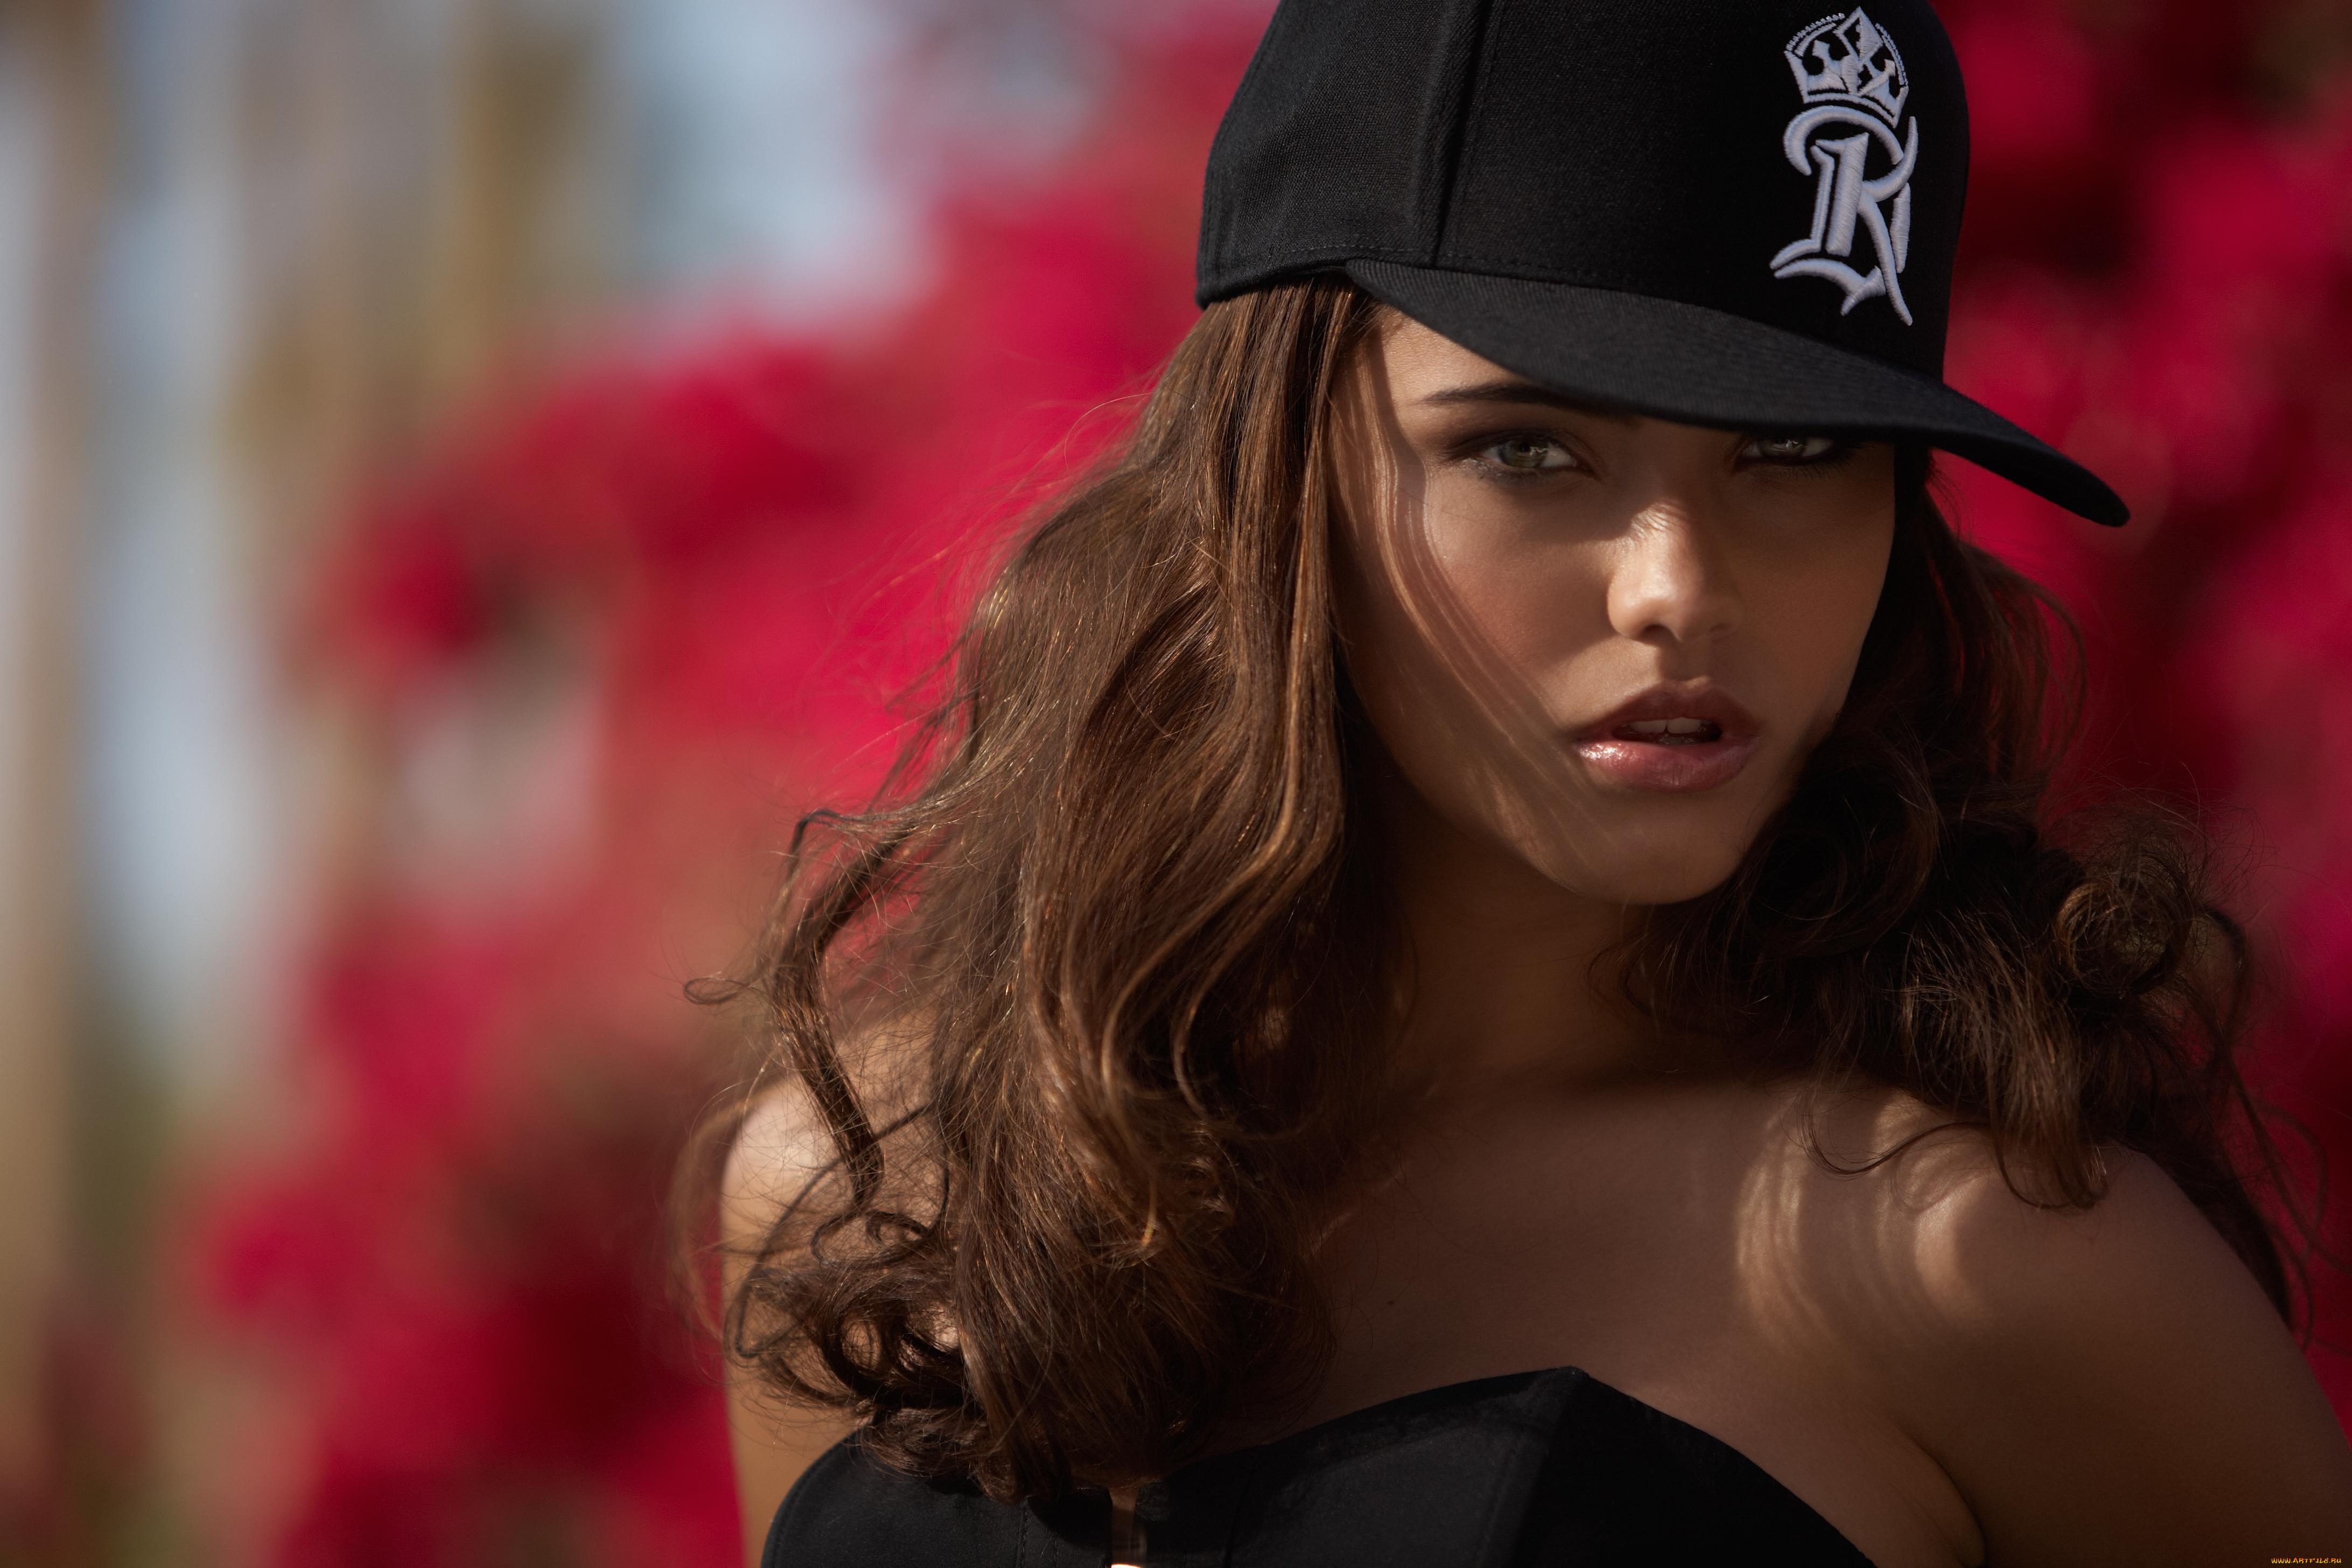 Обои на главный экран девушки. Nataniele Ribiero модель. Девушка в бейсболке. Красивая девушка в кепке.